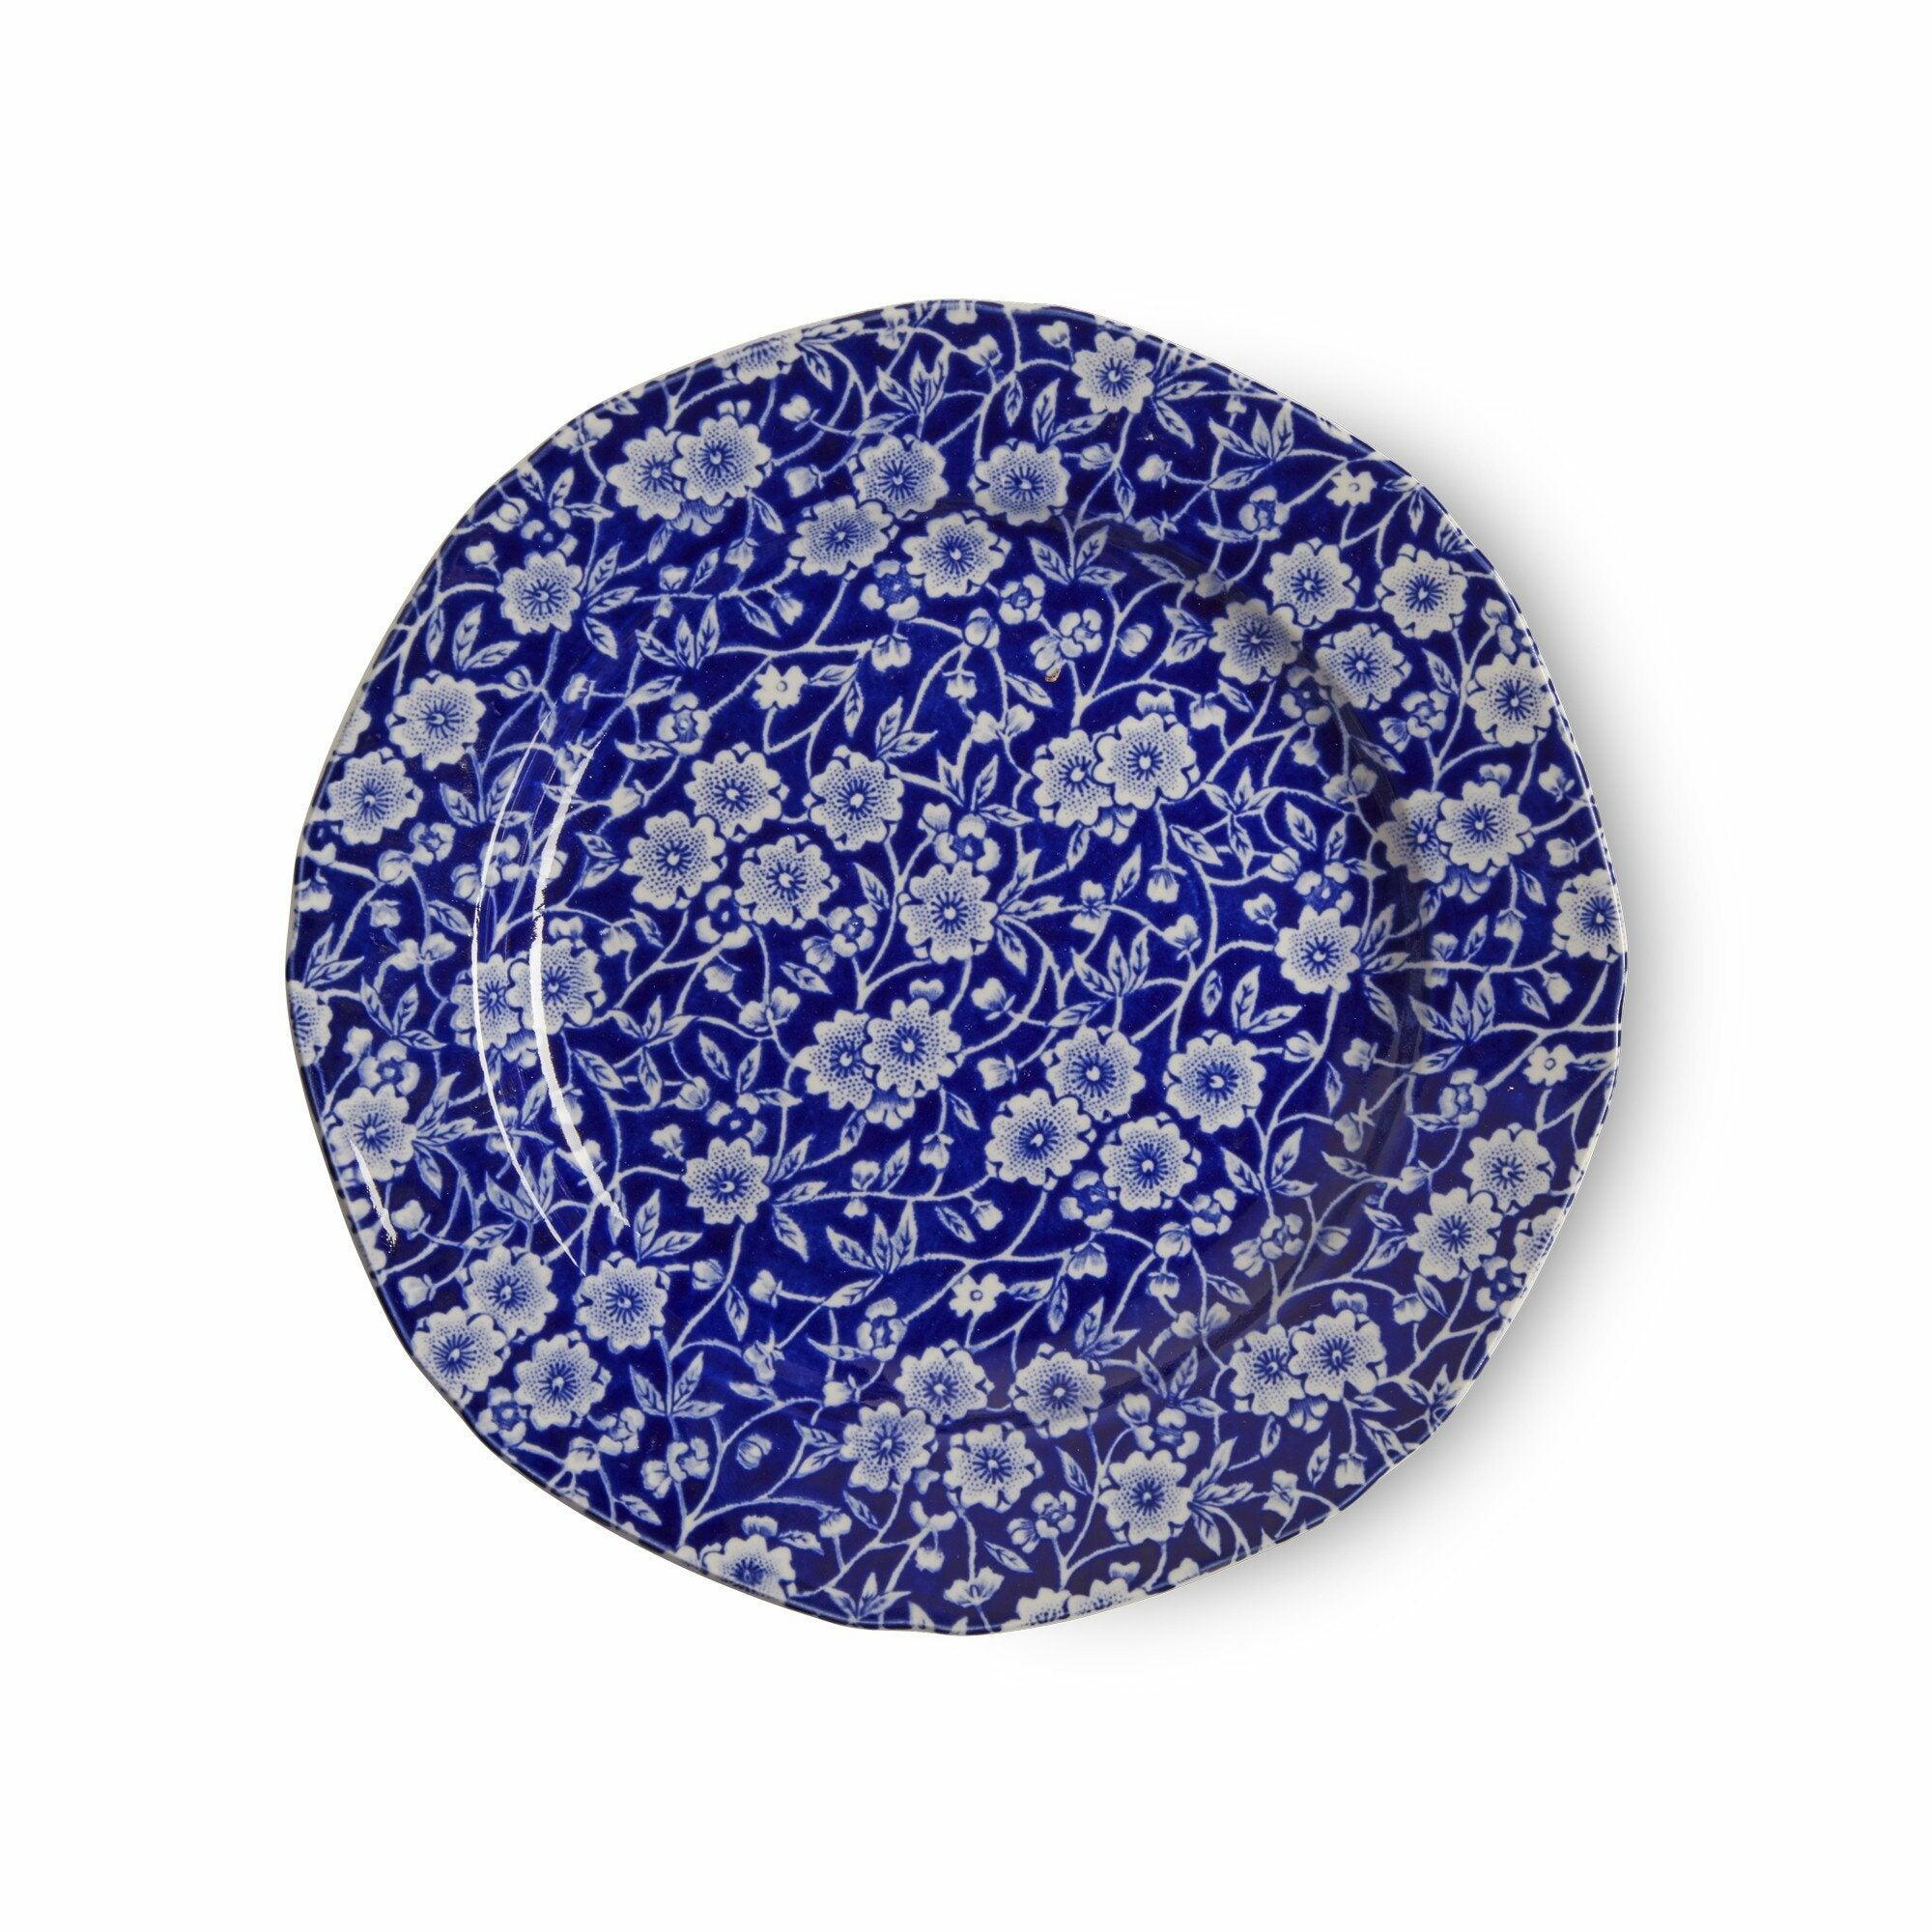 Blue Calico Plate 19cm/7.5"